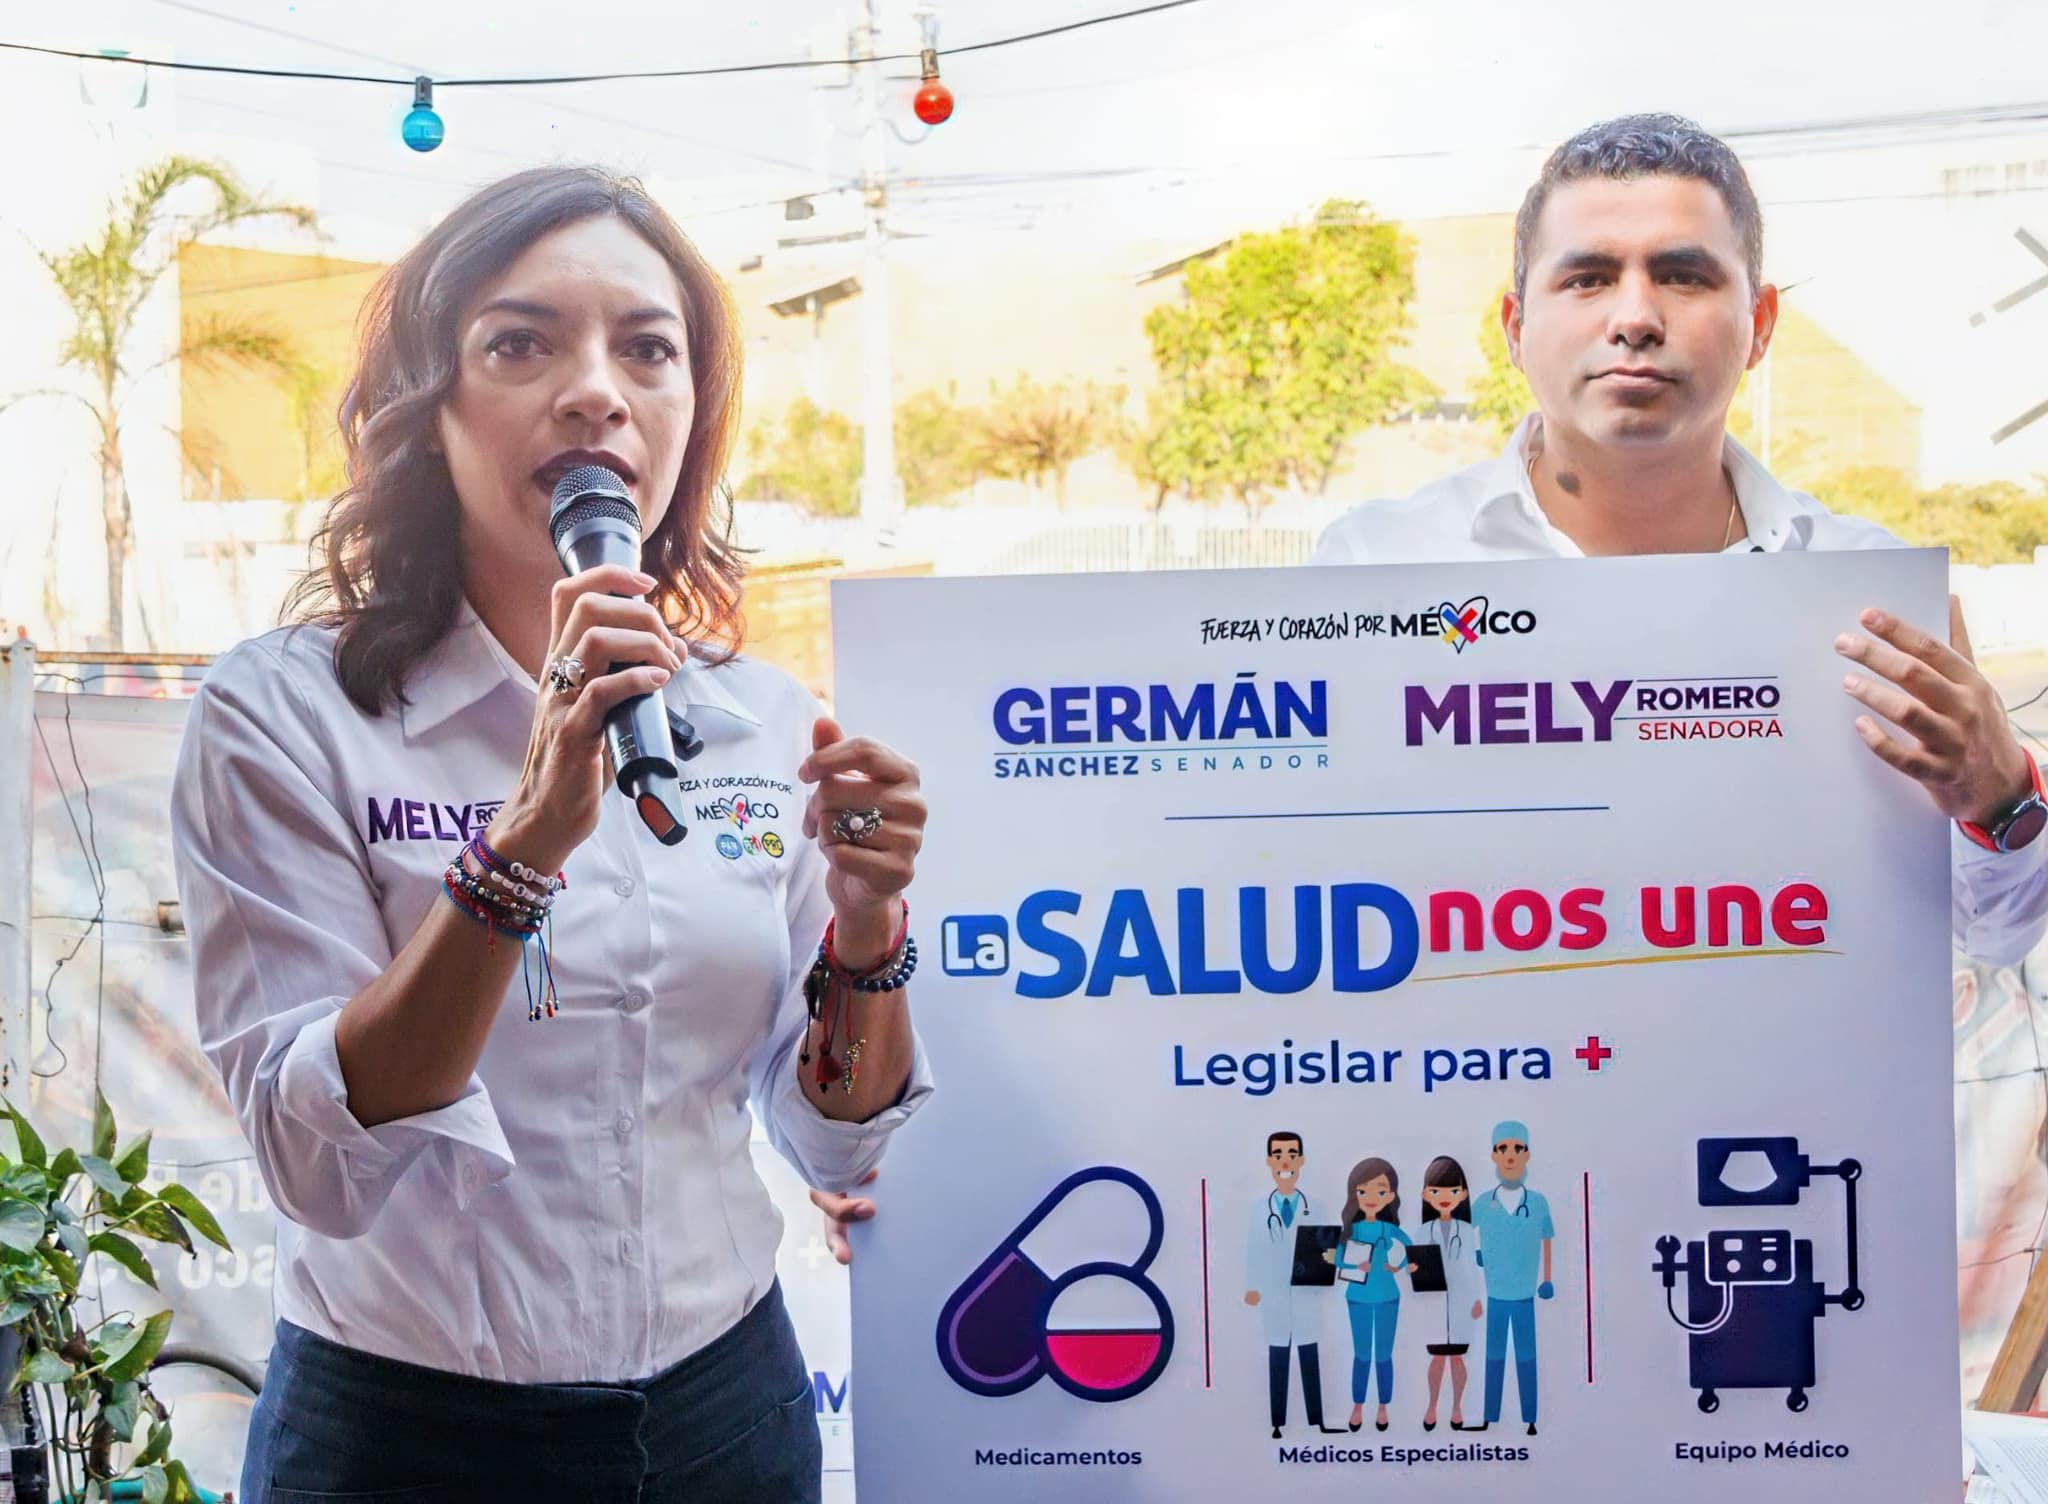 Mely Romero Celis y Germán Sánchez Álvarez, candidatos de la coalición “Fuerza y Corazón por México”.